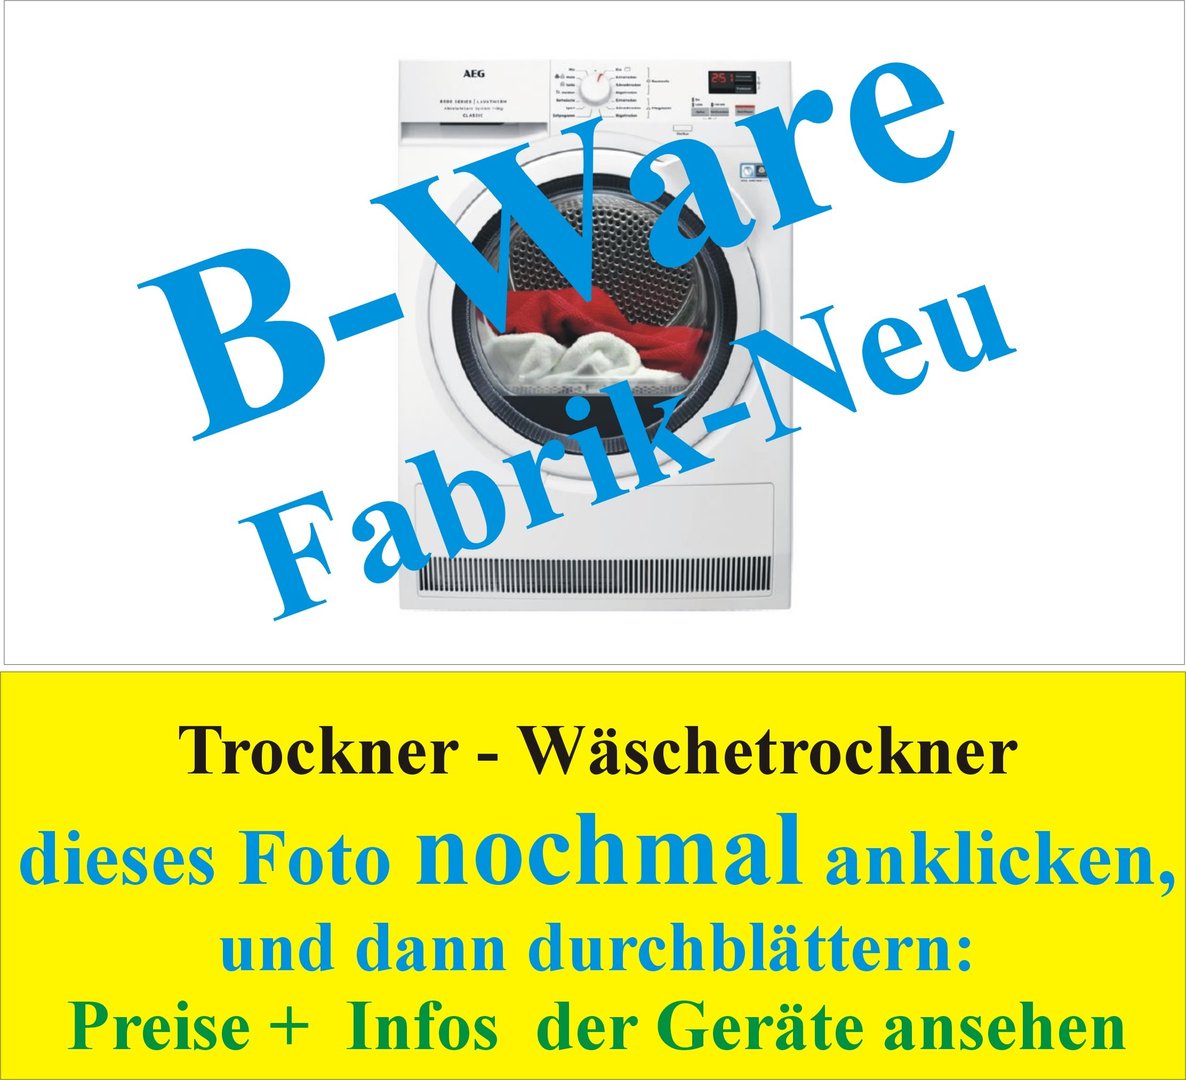 Trockner - Wäschetrockner